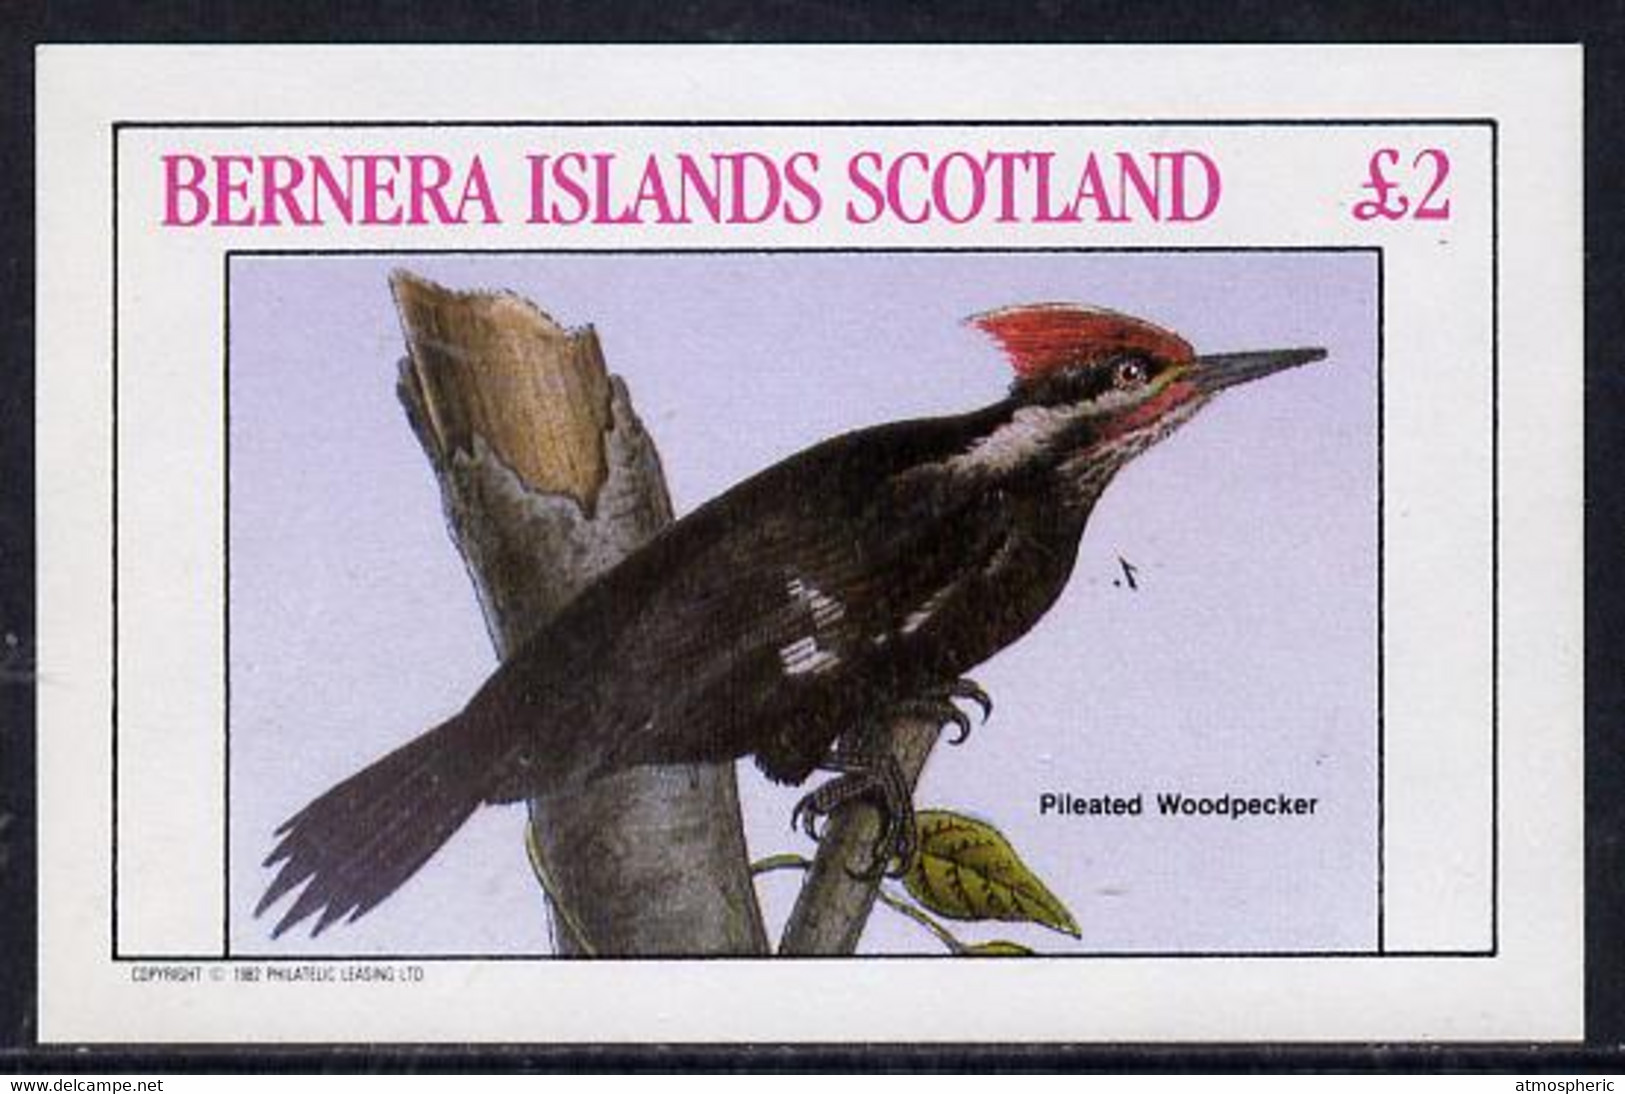 Bernera 1982 Woodpecker Imperf Deluxe Sheet (£2 Value) U/M - Scotland